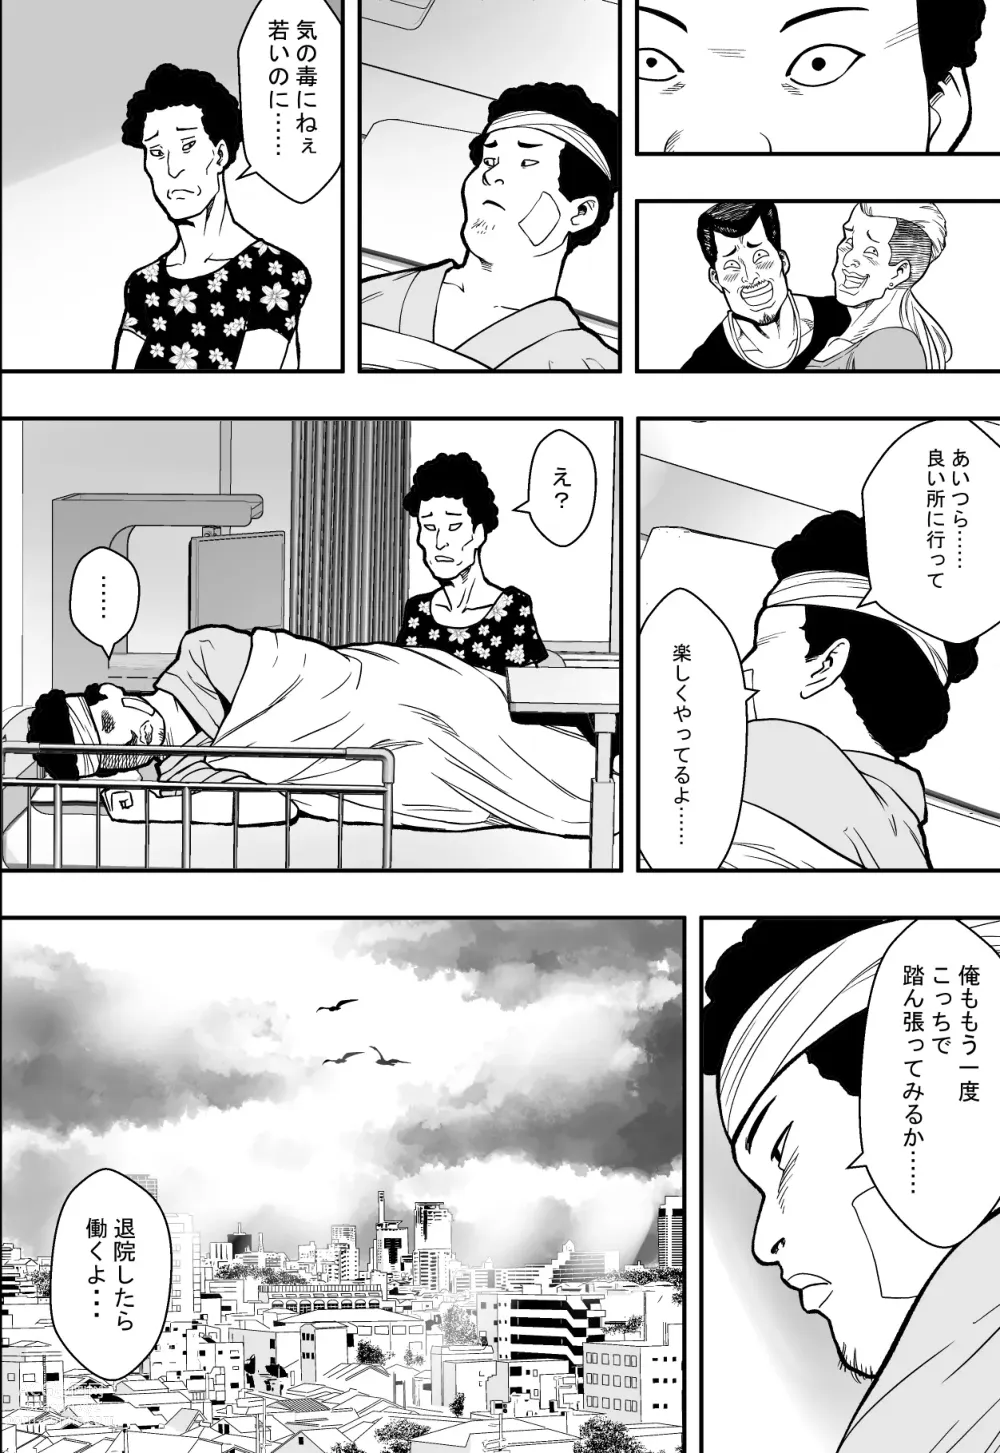 Page 51 of doujinshi 転生ハーレム全寝取られ